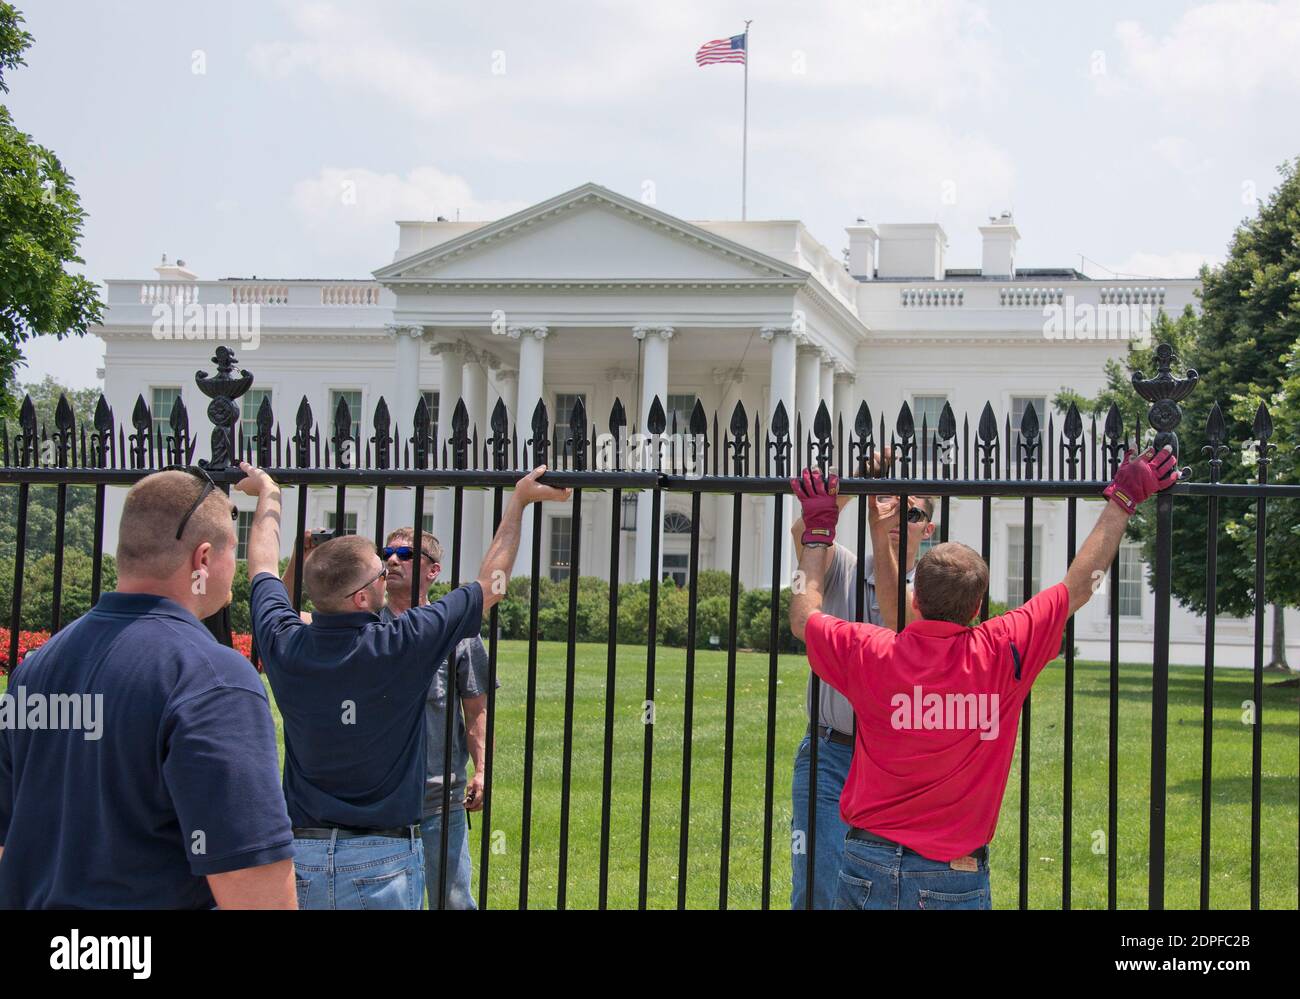 I lavoratori aggiungono nuove misure di sicurezza alla recinzione di fronte alla Casa Bianca a Washington, DC, USA, mercoledì 1 luglio 2015. Le nuove misure sono progettate per scoraggiare i ponticelli e gli intrusi della recinzione. Foto di Ron Sachs/CNP/ABACAPRESS.COM Foto Stock